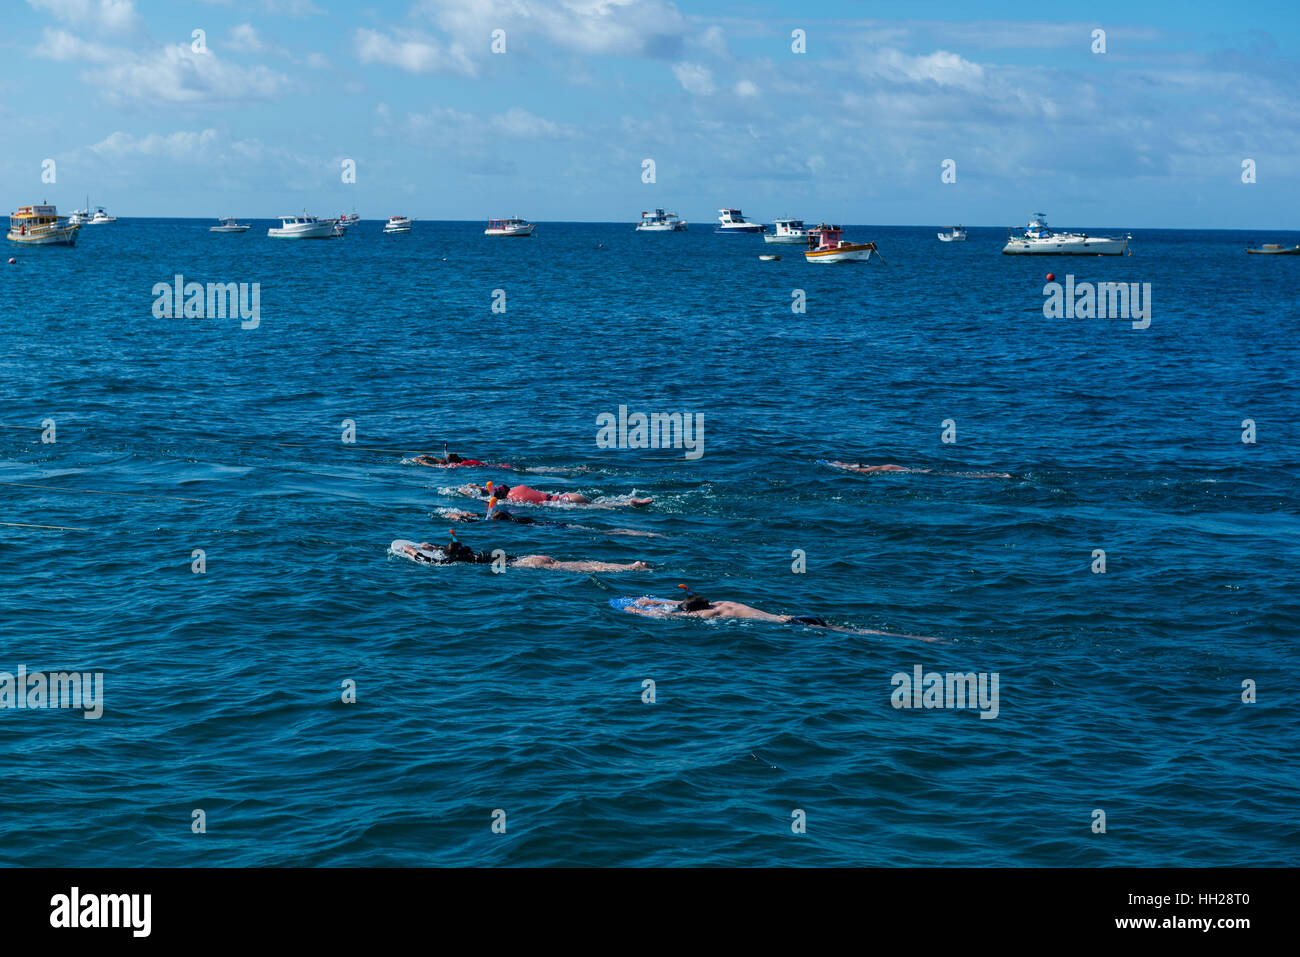 Touristen Schnorcheln vor der brasilianischen atlantischen Insel Fernando De Noronha, jeweils gezogen von einem Boot, Pernambuco, Brasilien Stockfoto